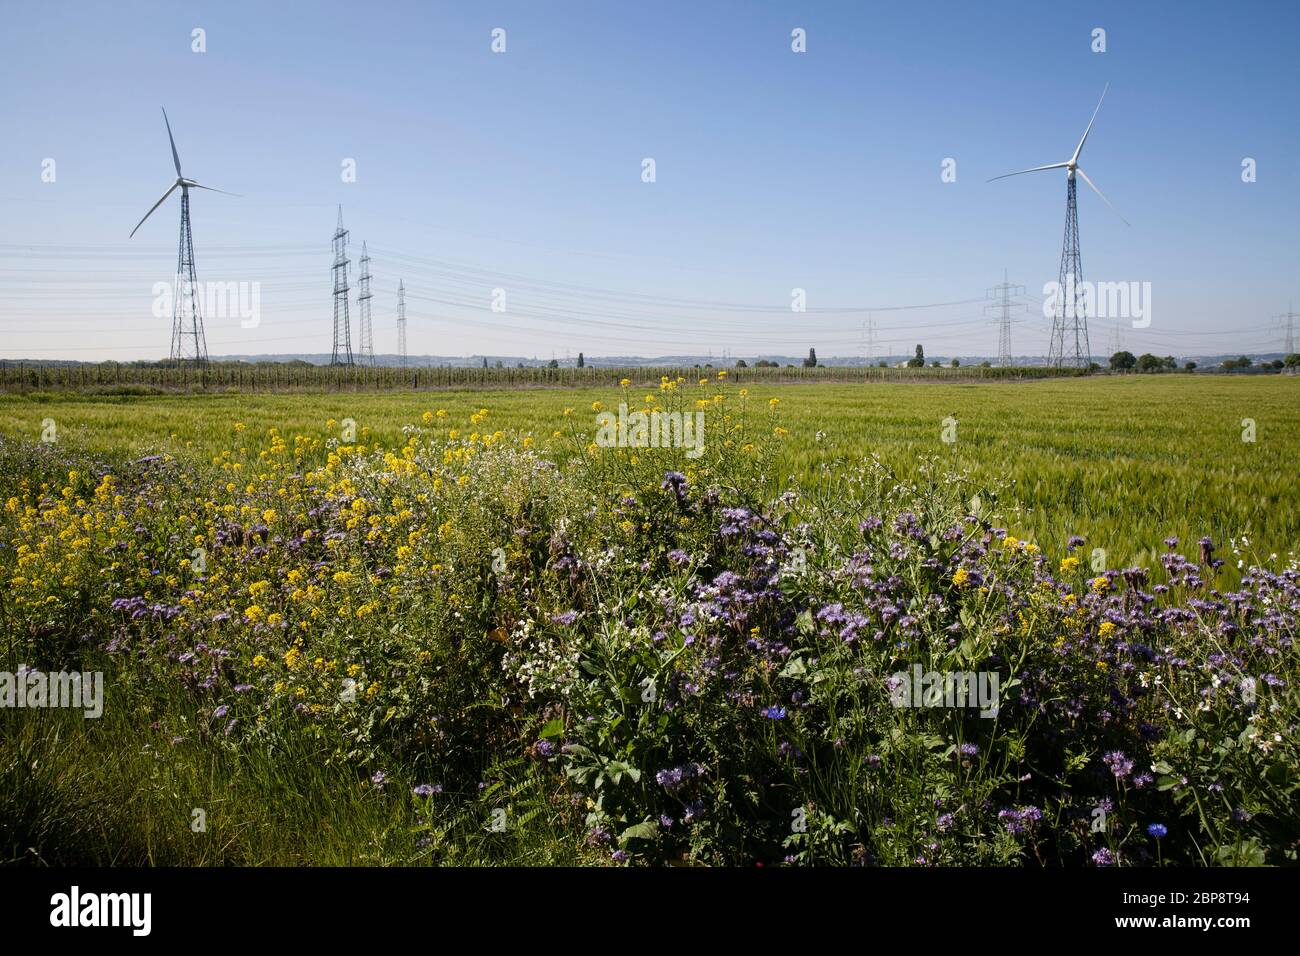 Bande fleurie d'un champ et de centrales éoliennes à Bornheim près de Bonn, Rhénanie-du-Nord-Westphalie, Allemagne. Einem Feldran und Windkraf Banque D'Images